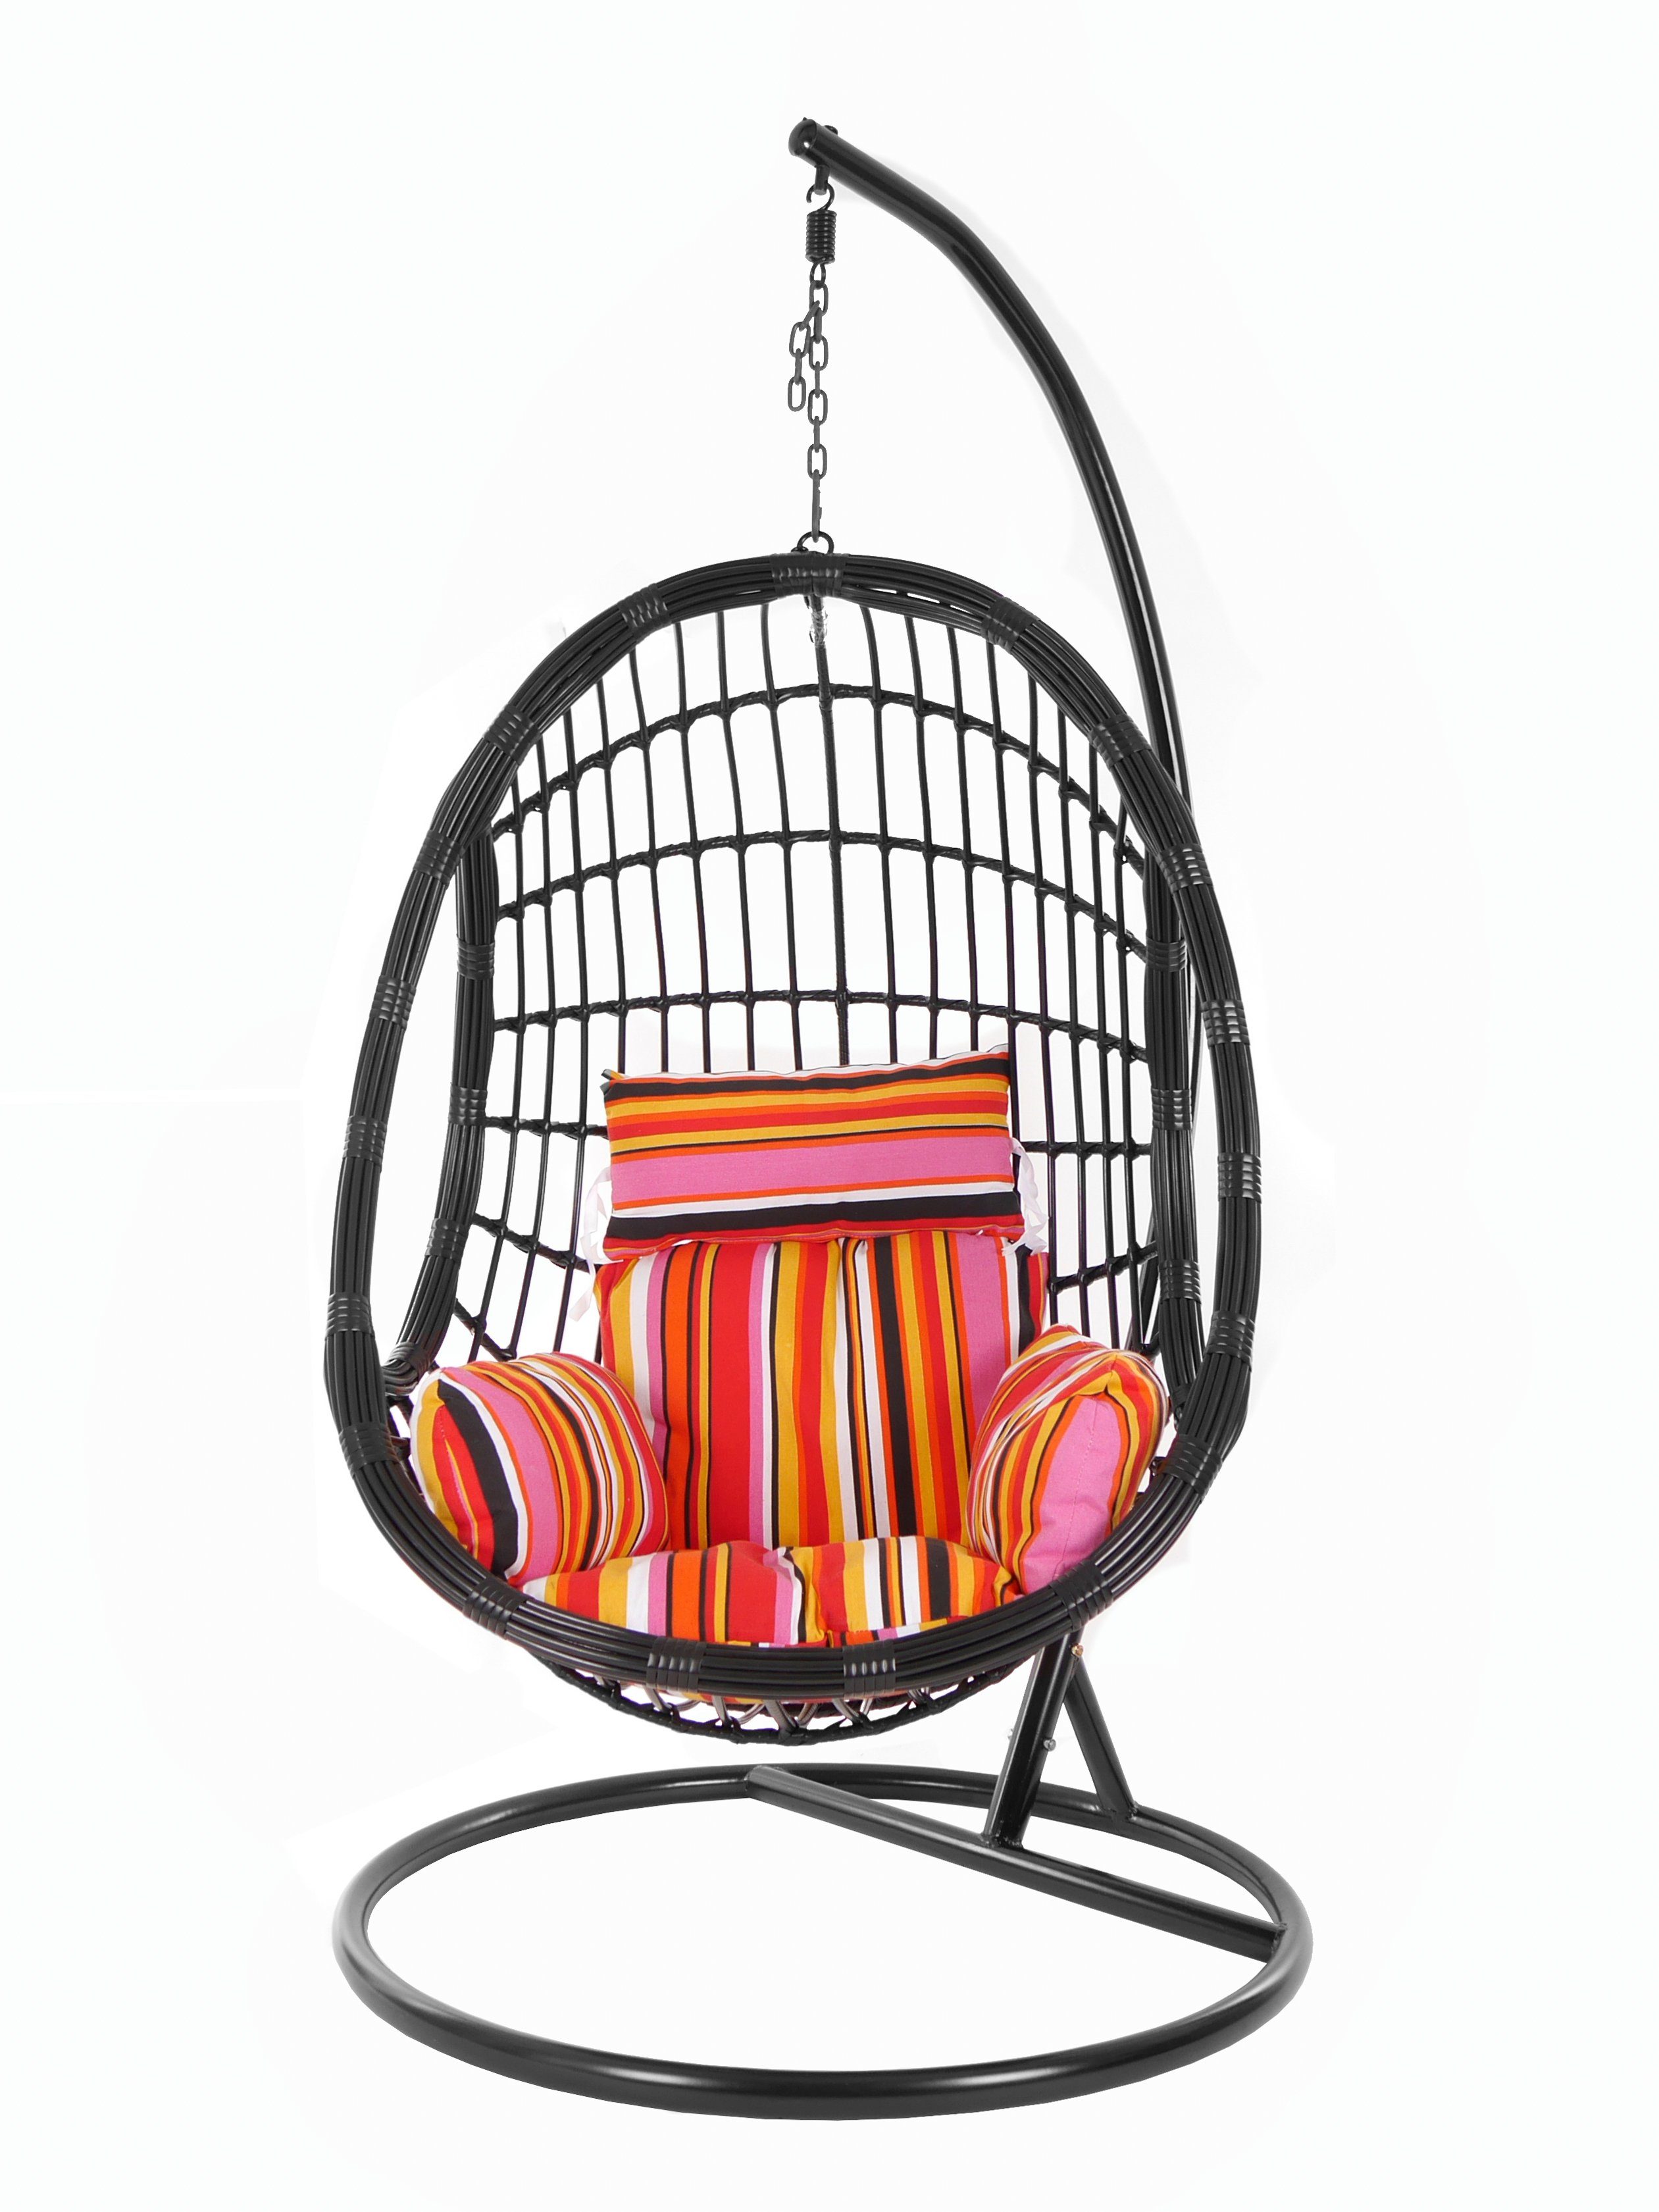 PALMANOVA Loungemöbel, und Schwarz, Kissen, gestreift lollipop) Gestell Swing Muster Hängesessel mit Schwebesessel, KIDEO Hängesessel Chair, bunt (3450 black,